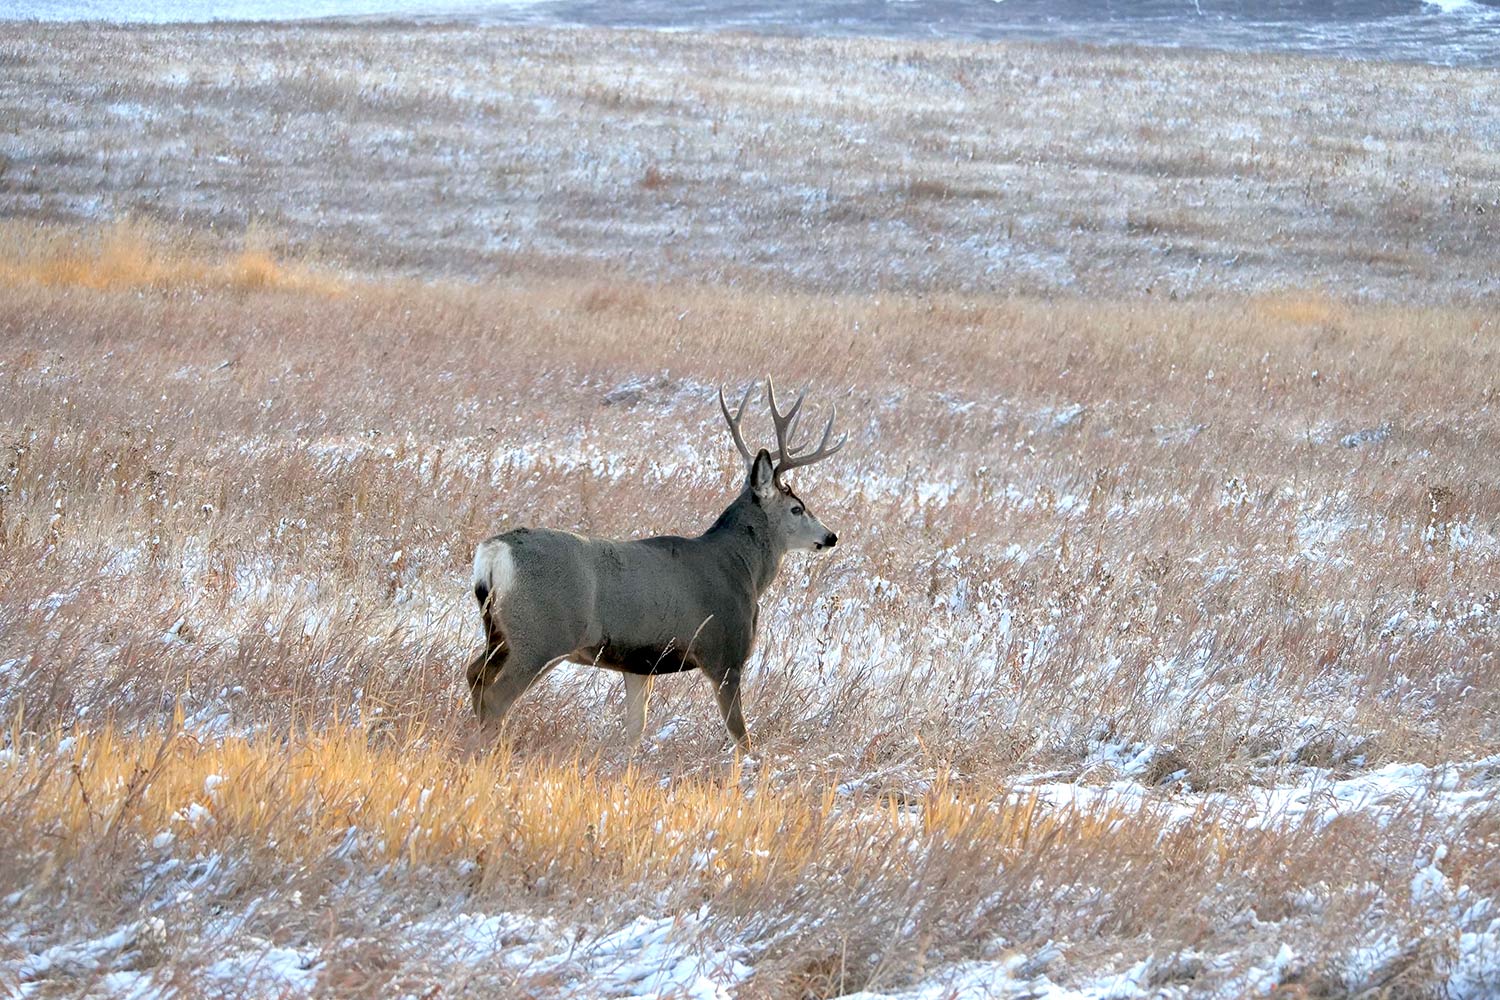 mule deer in a snowy field.